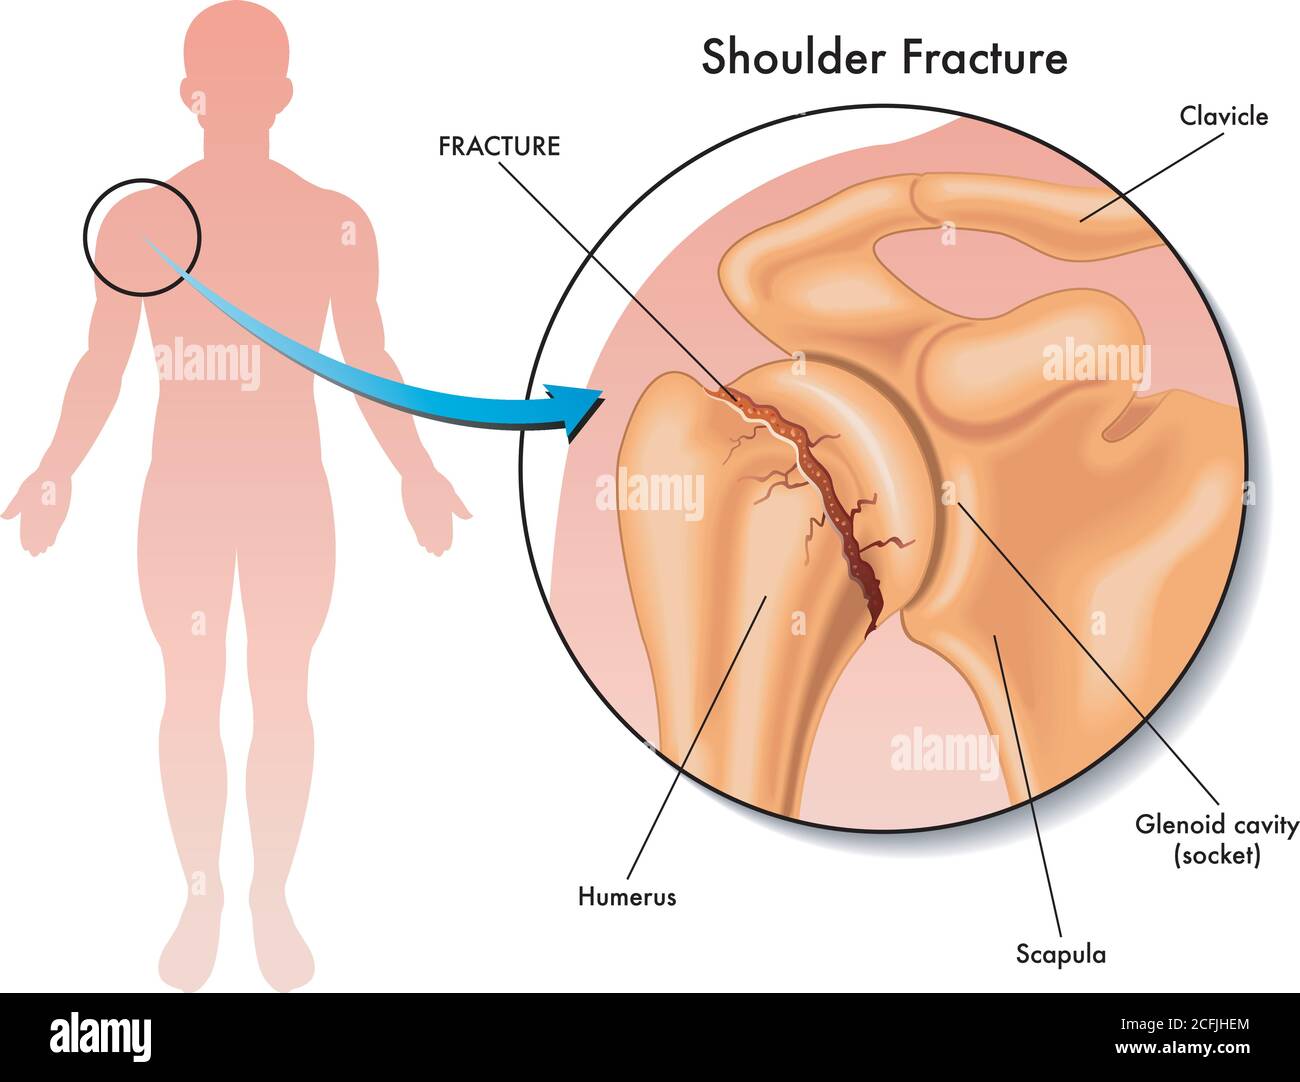 Illustration médicale d'une fracture de l'épaule et de son emplacement dans le corps humain, avec des annotations. Illustration de Vecteur